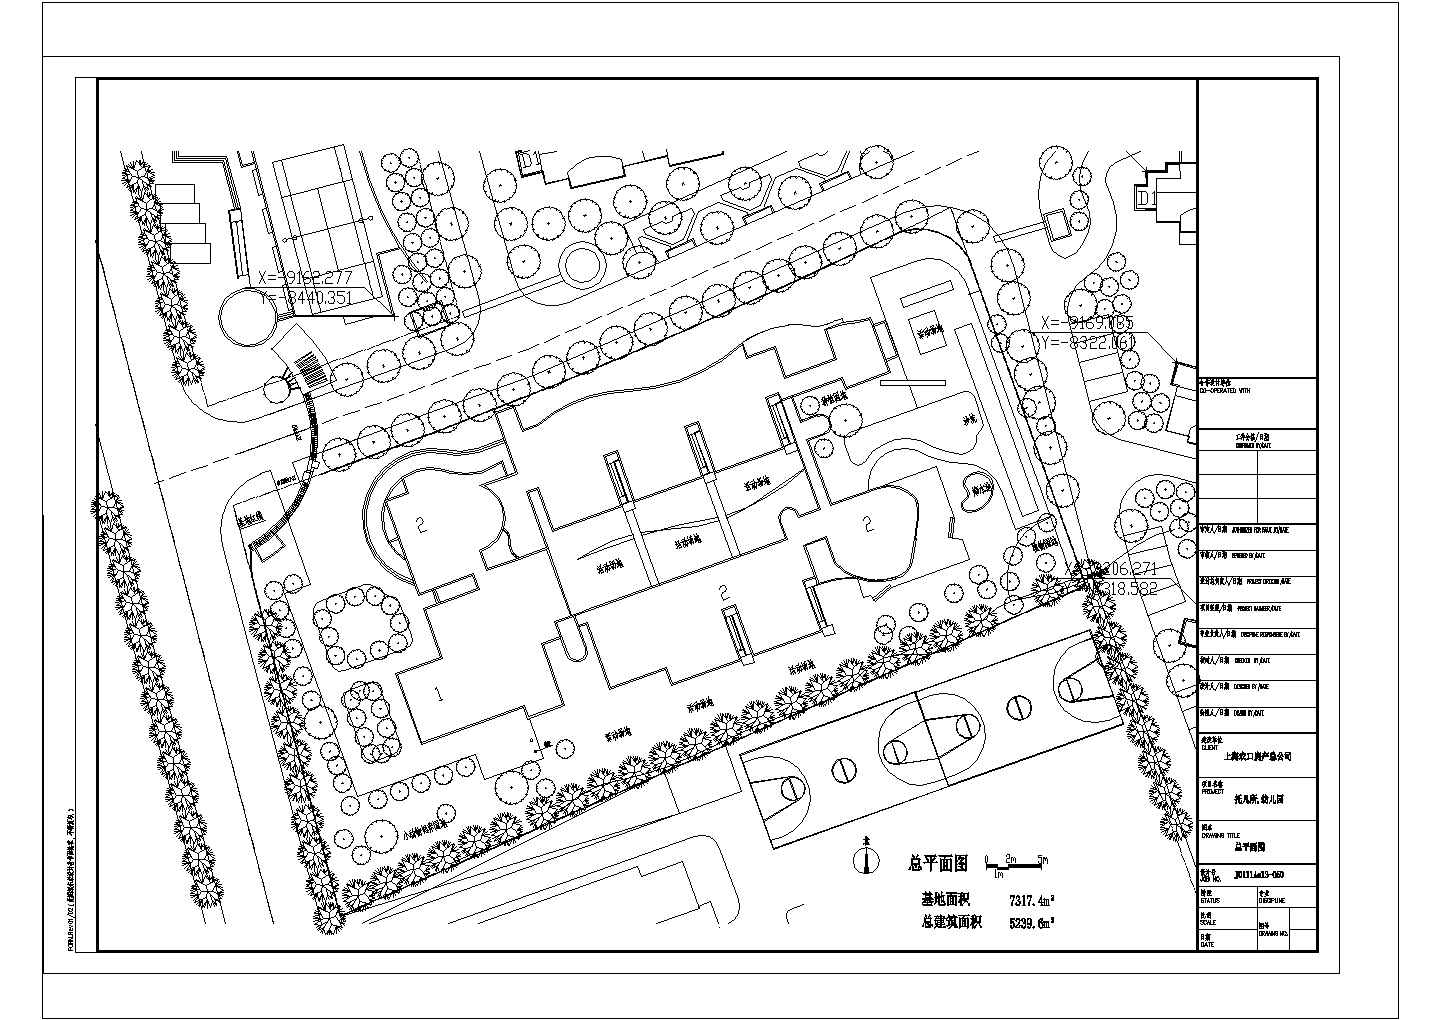 3层5239.6㎡托儿所和幼儿园建筑设计图（6班托儿所 9班幼儿园 说明）